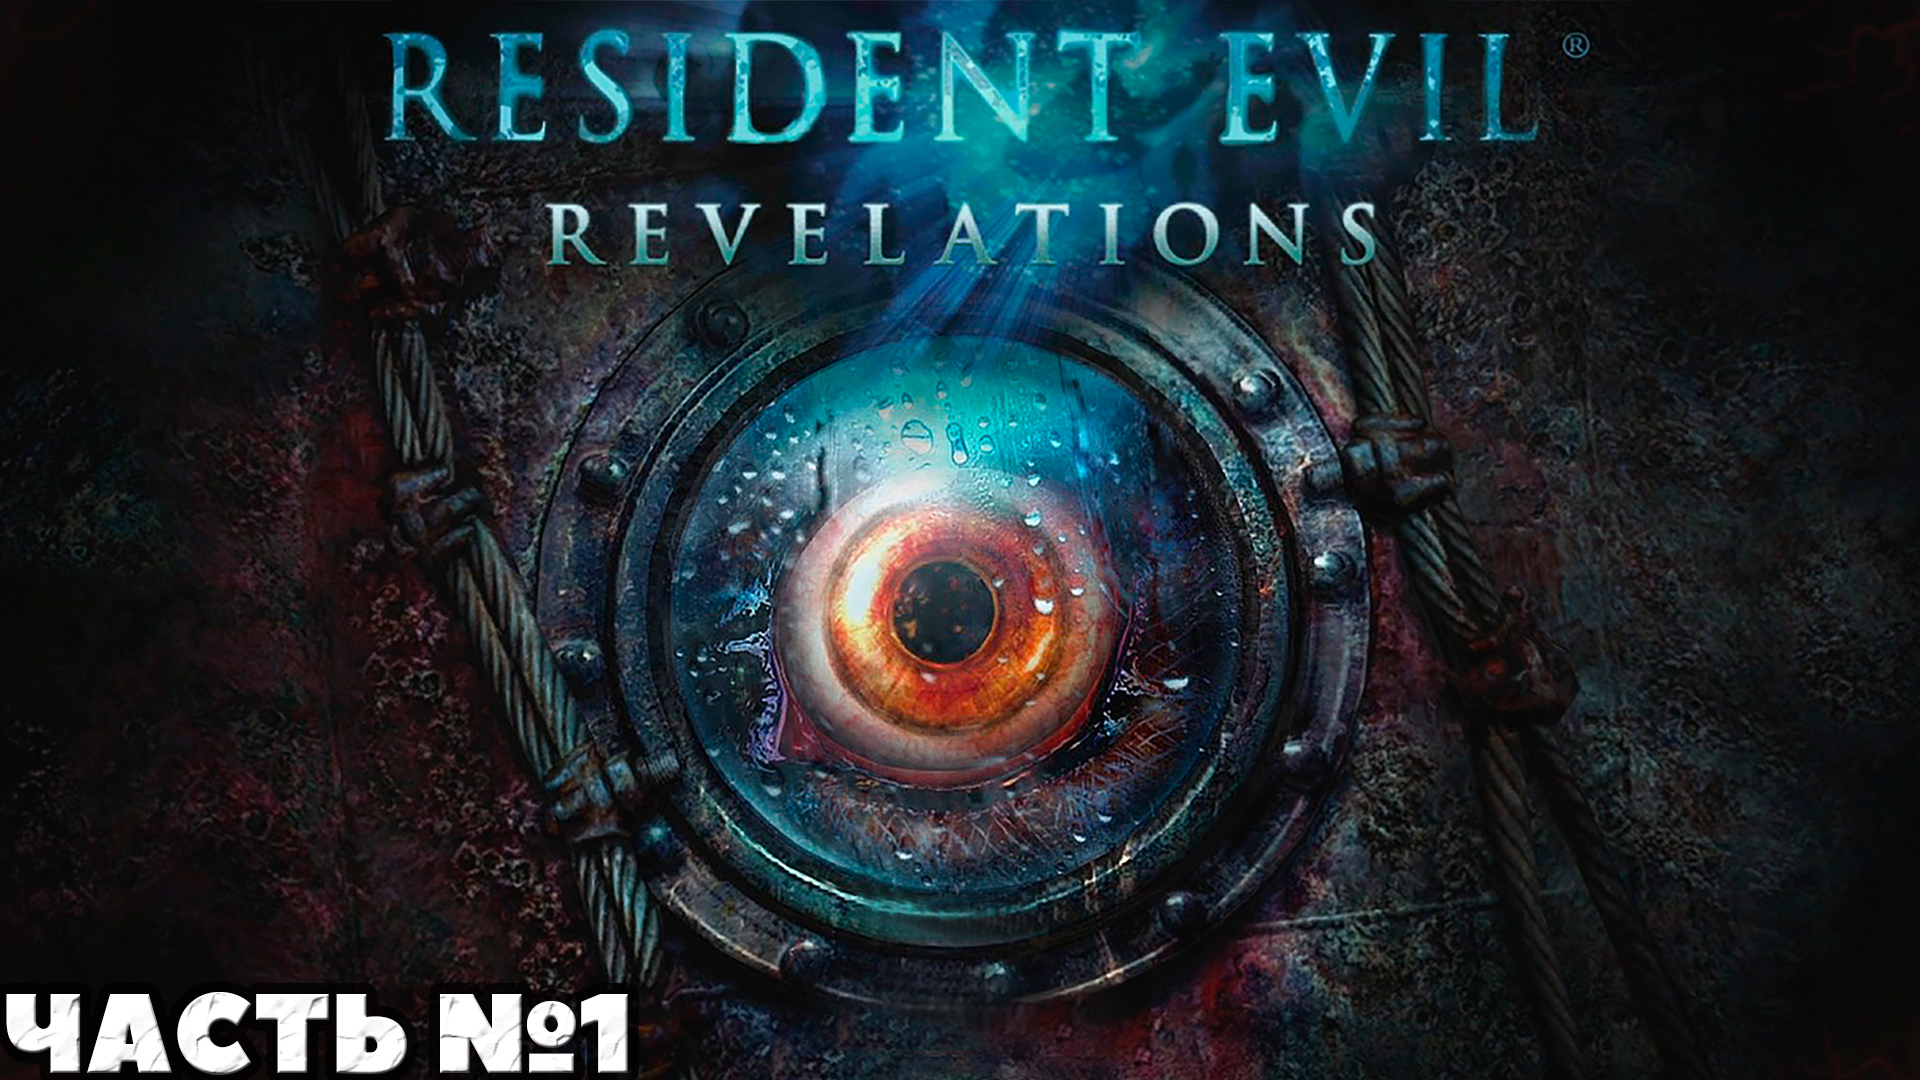 Resident Evil Revelations - Прохождение. Часть №1. #residentevil #revelations #stream